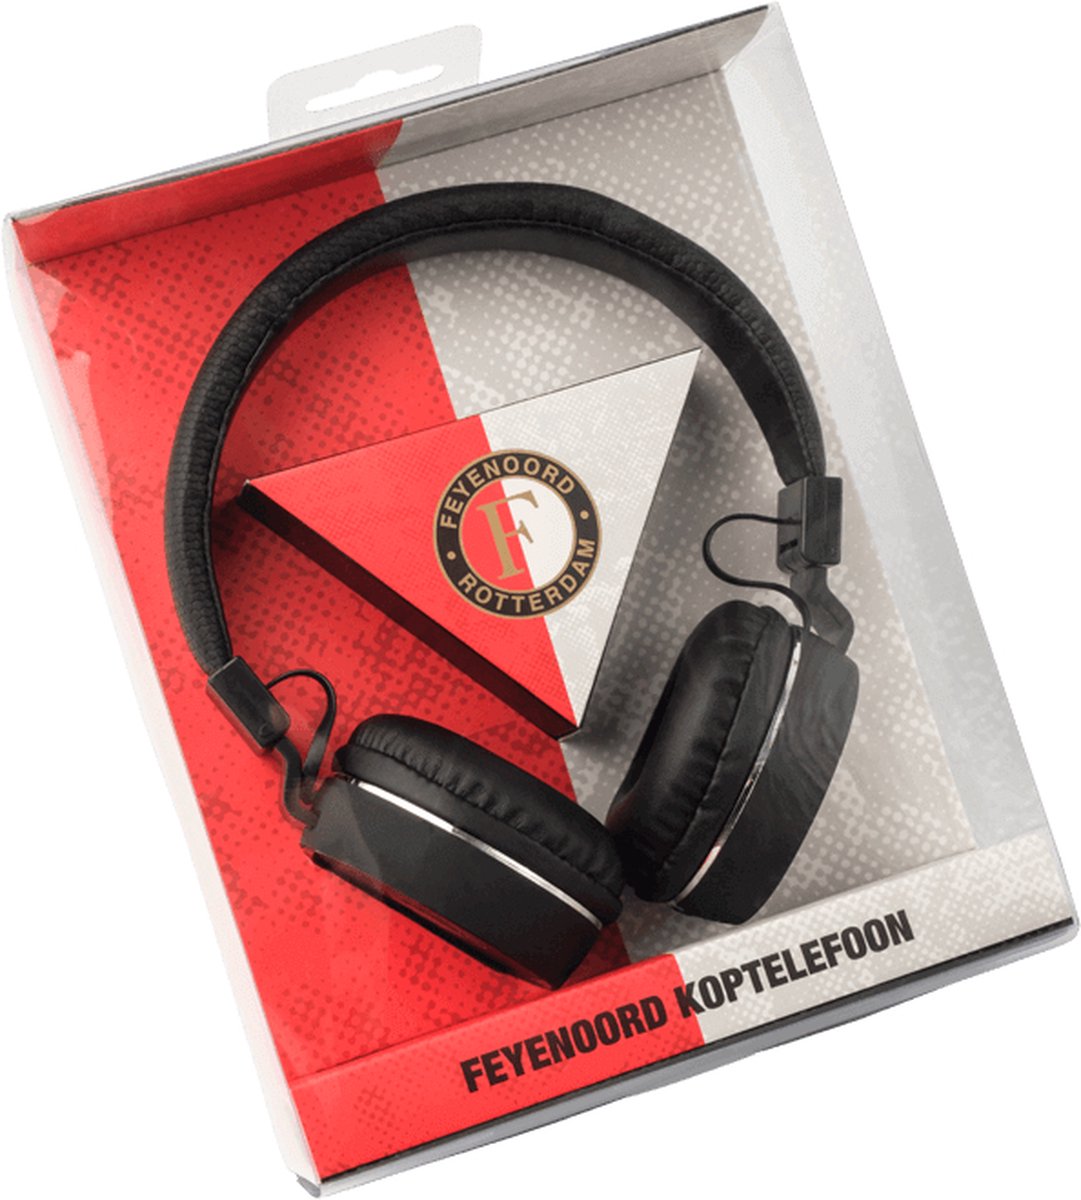 Feyenoord koptelefoon - 108dB - Inclusief geschenkverpakking